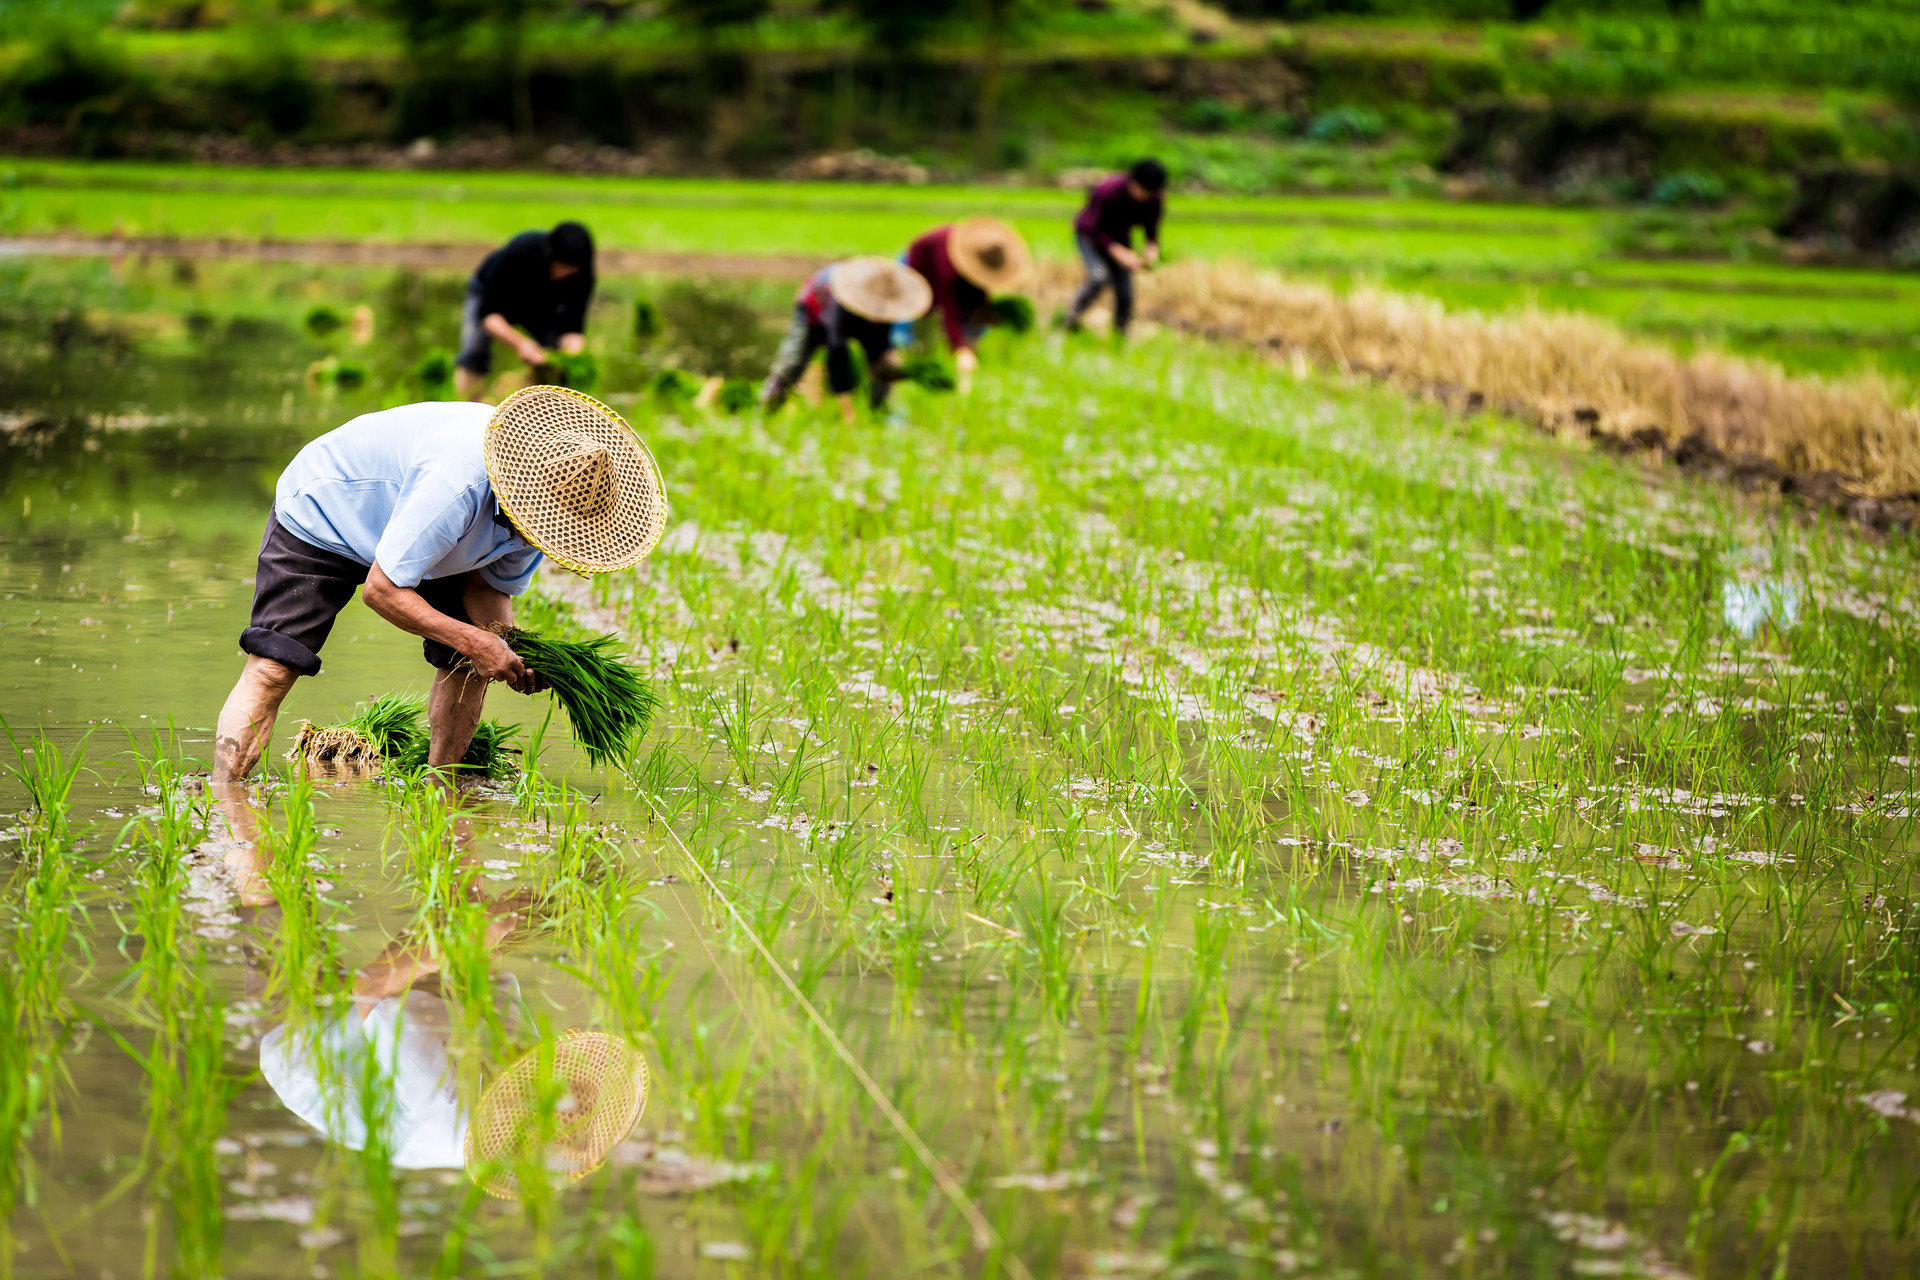 海水稻技术不断创新 青岛向着“农业强市”目标再进发